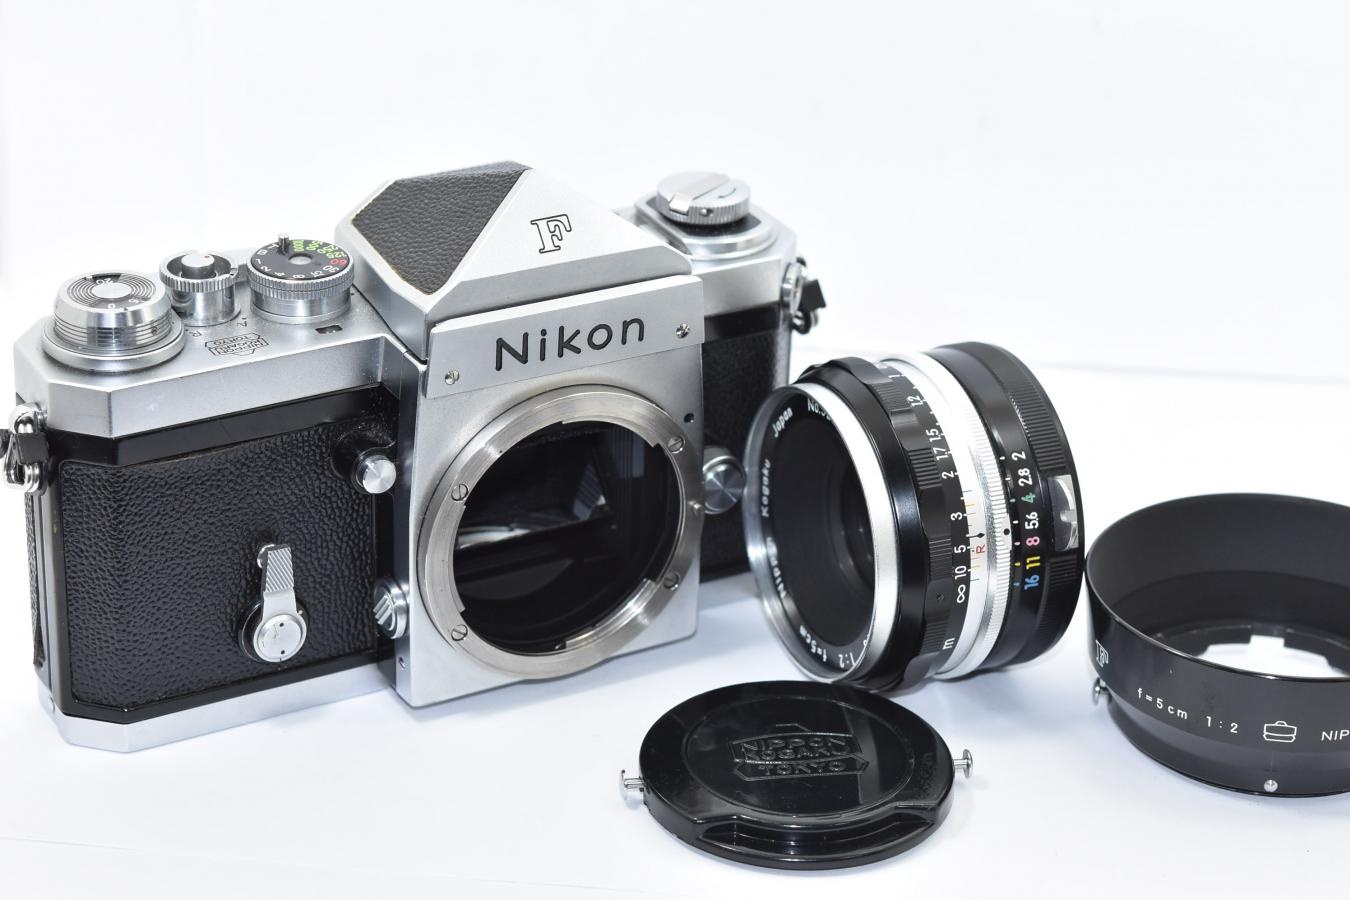 【コレクション向け 希 少】 Nikon F アイレベル640 NIKKOR-S Auto 5cm F2付 【チックマーク/R刻印入/PAT.PEND最初期 日本光学マーク入りフード、キャップ付】